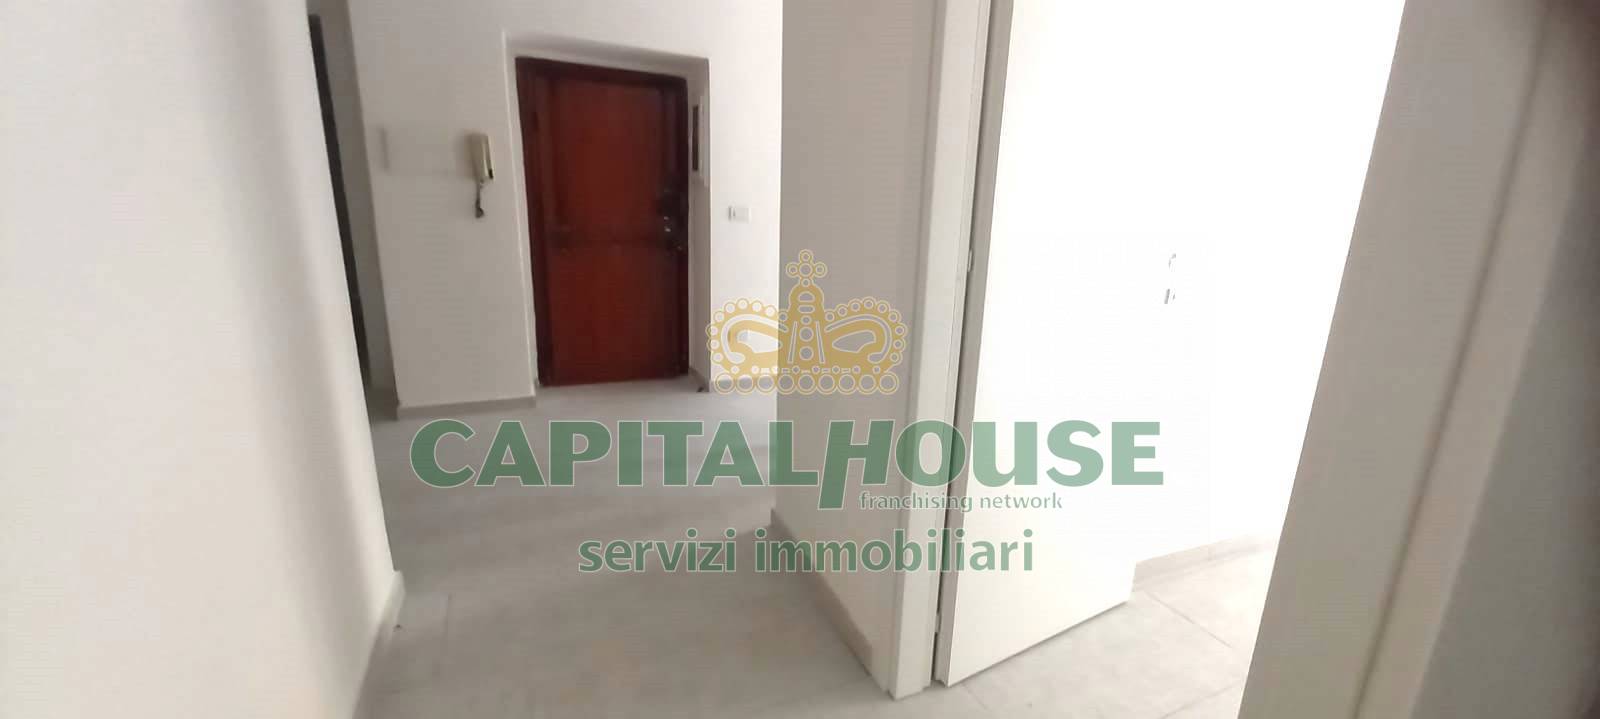 Appartamento in affitto a Capua, 3 locali, prezzo € 380 | PortaleAgenzieImmobiliari.it